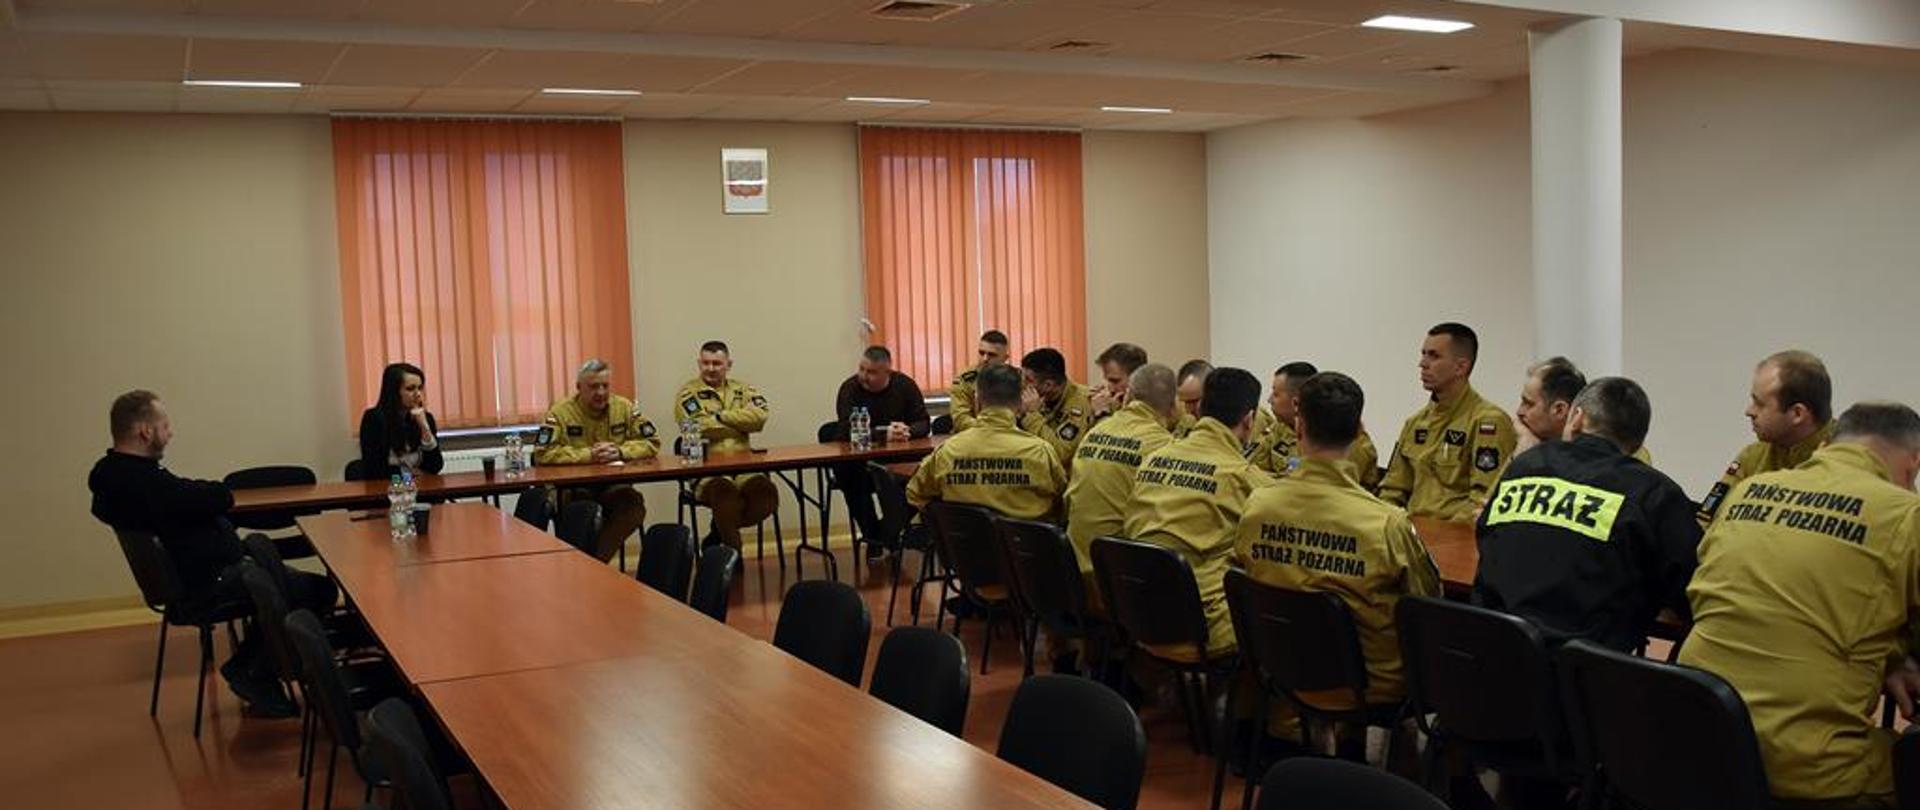 Szkolenie z zakresu współpracy z mediami podczas działań ratowniczo gaśniczych w Staszowie